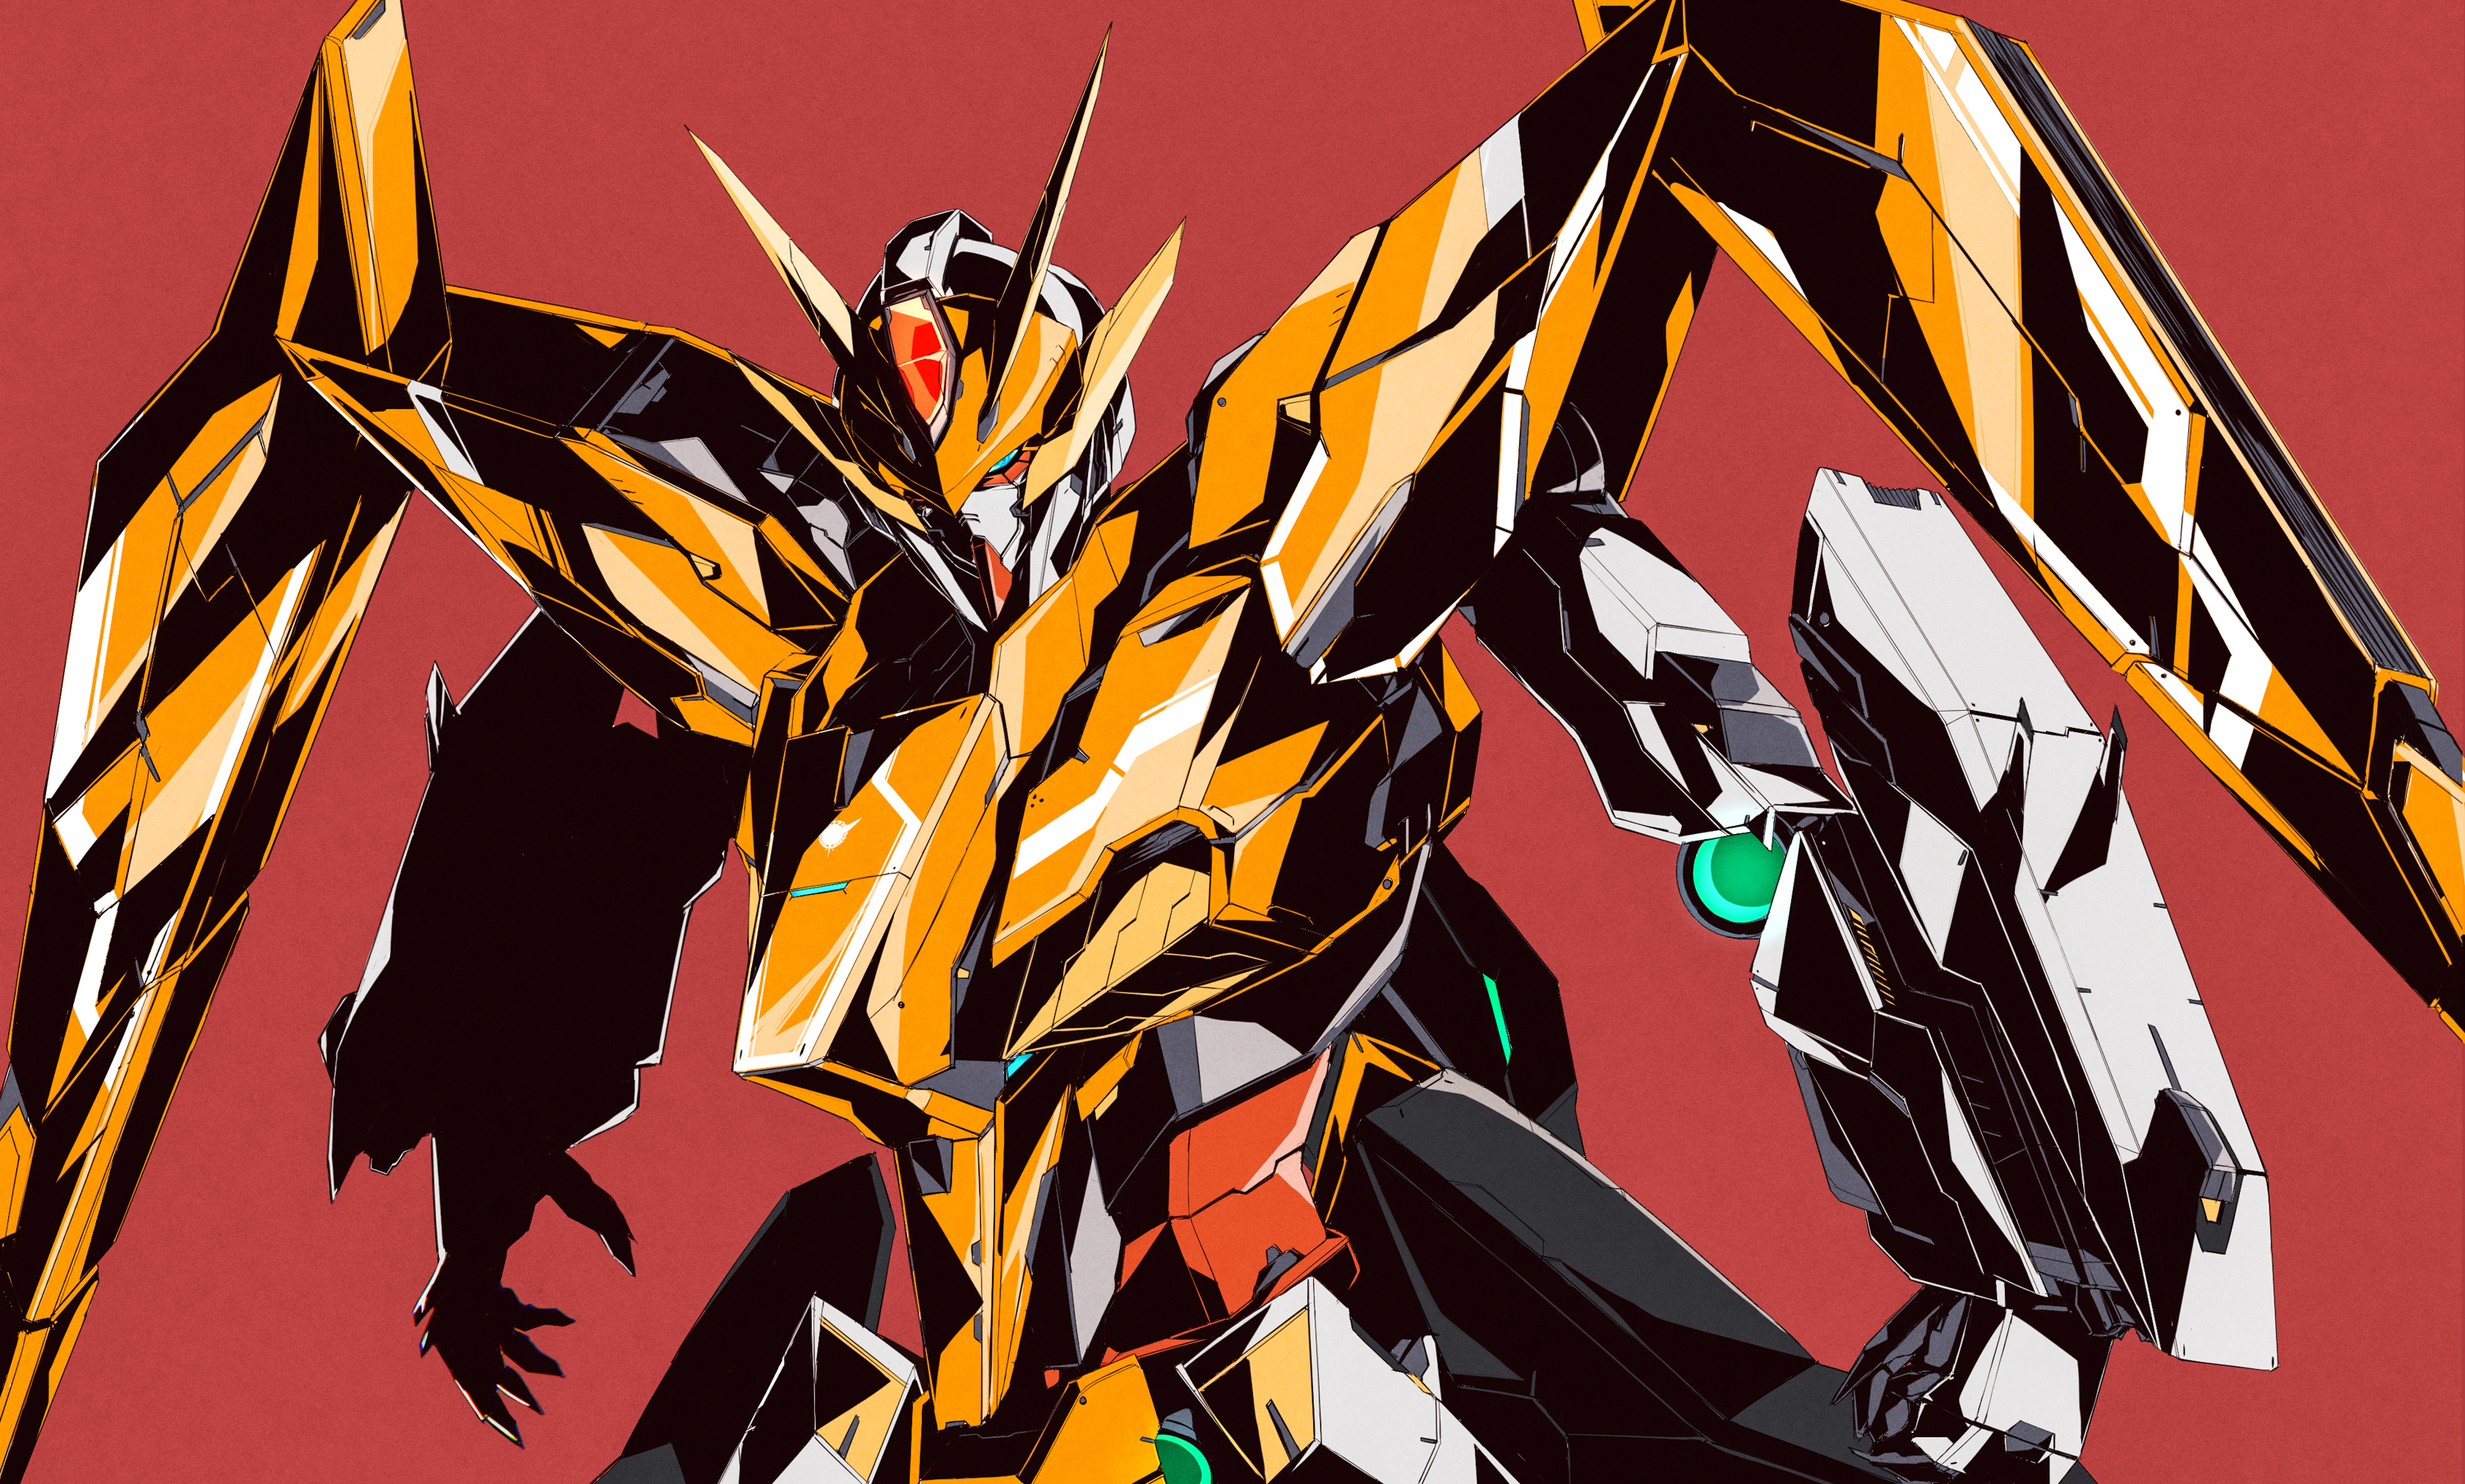 Anime 3000x1806 Arios Gundam anime mechs Gundam Super Robot Taisen Mobile Suit Gundam 00 artwork digital art fan art